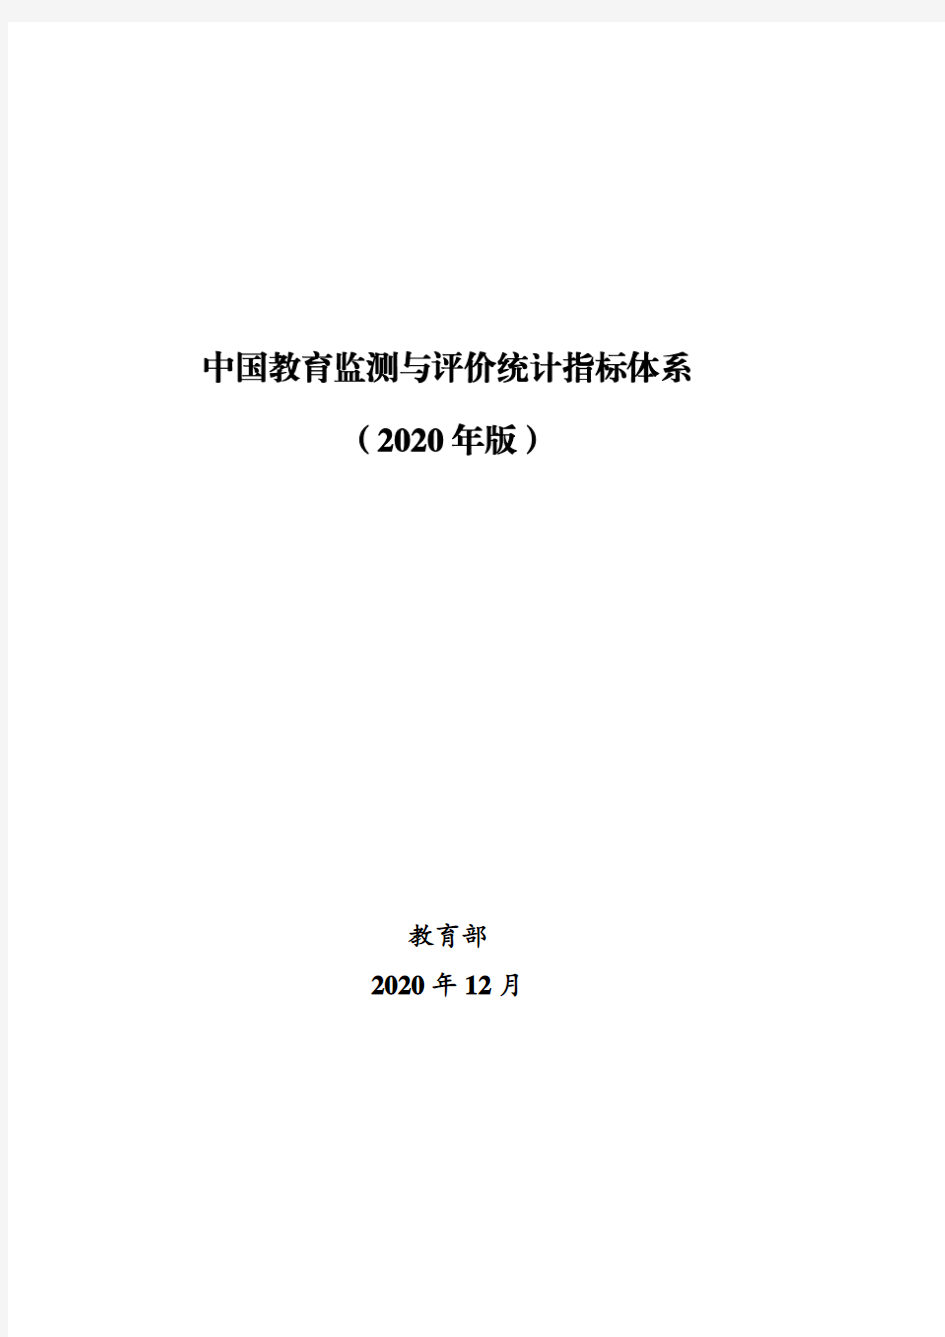 《中国教育监测与评价统计指标体系(2020年版)》